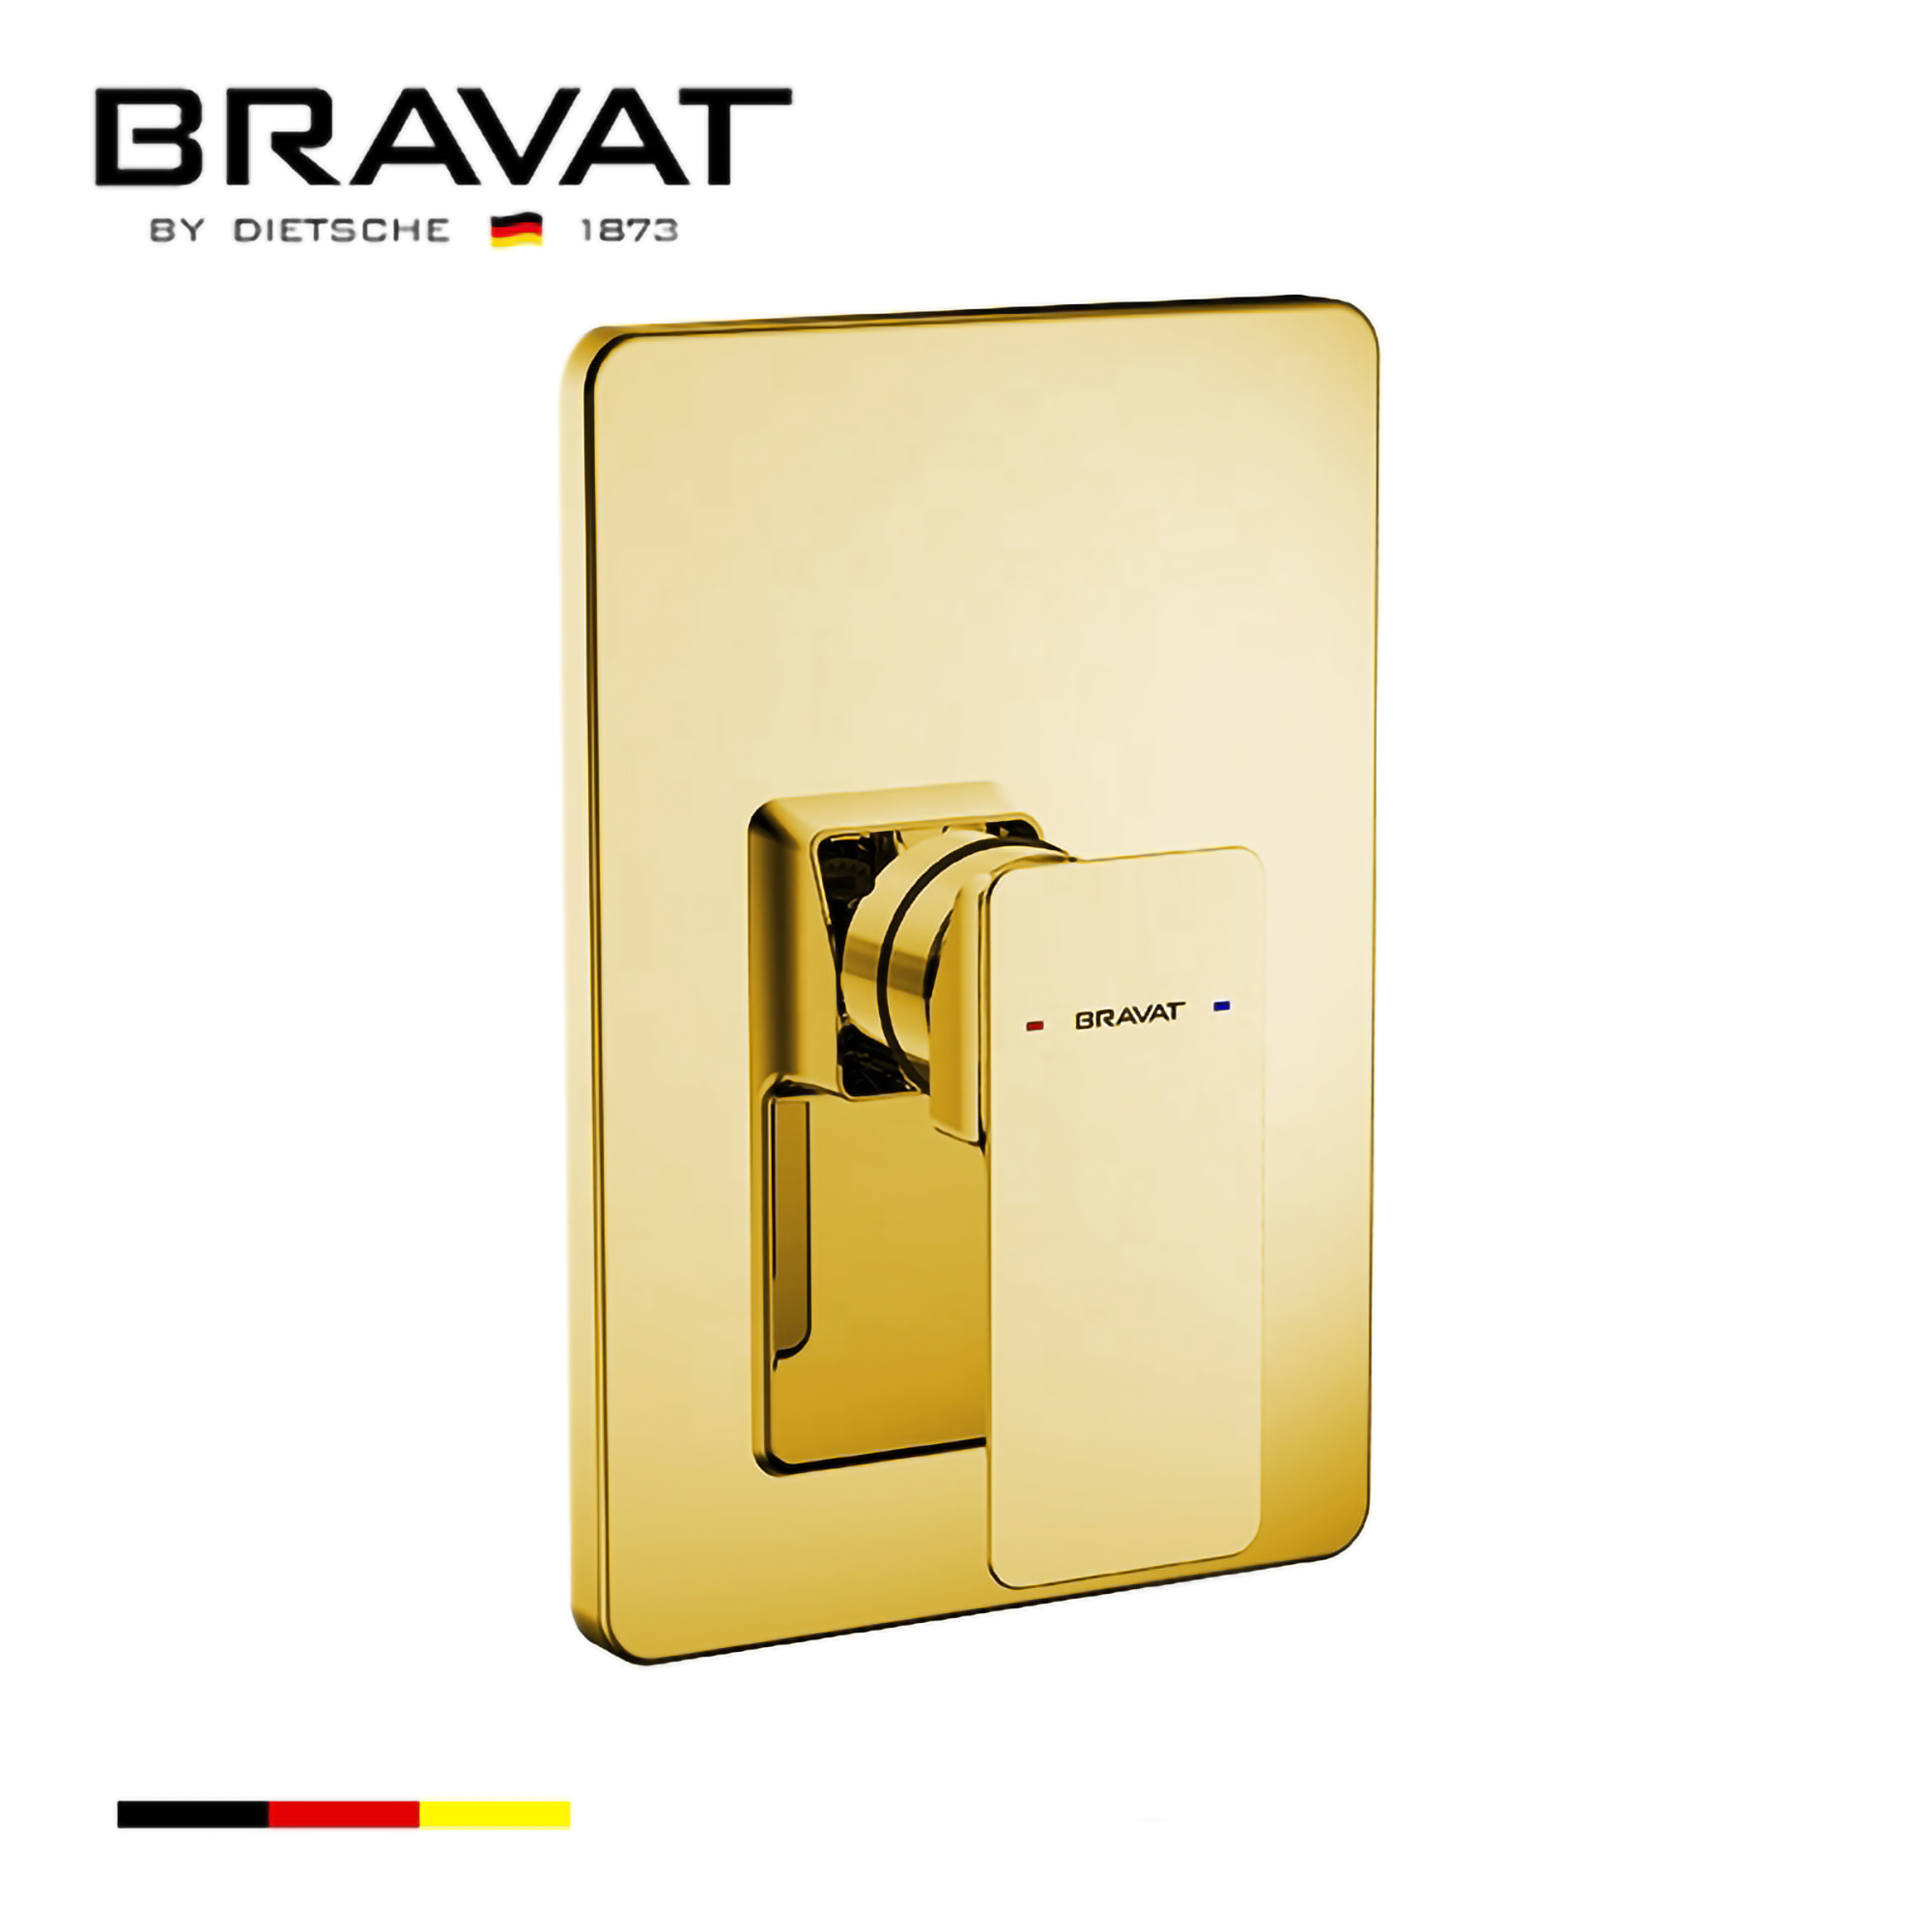 Bravat Gold Wall Mounted Shower Valve Mixer